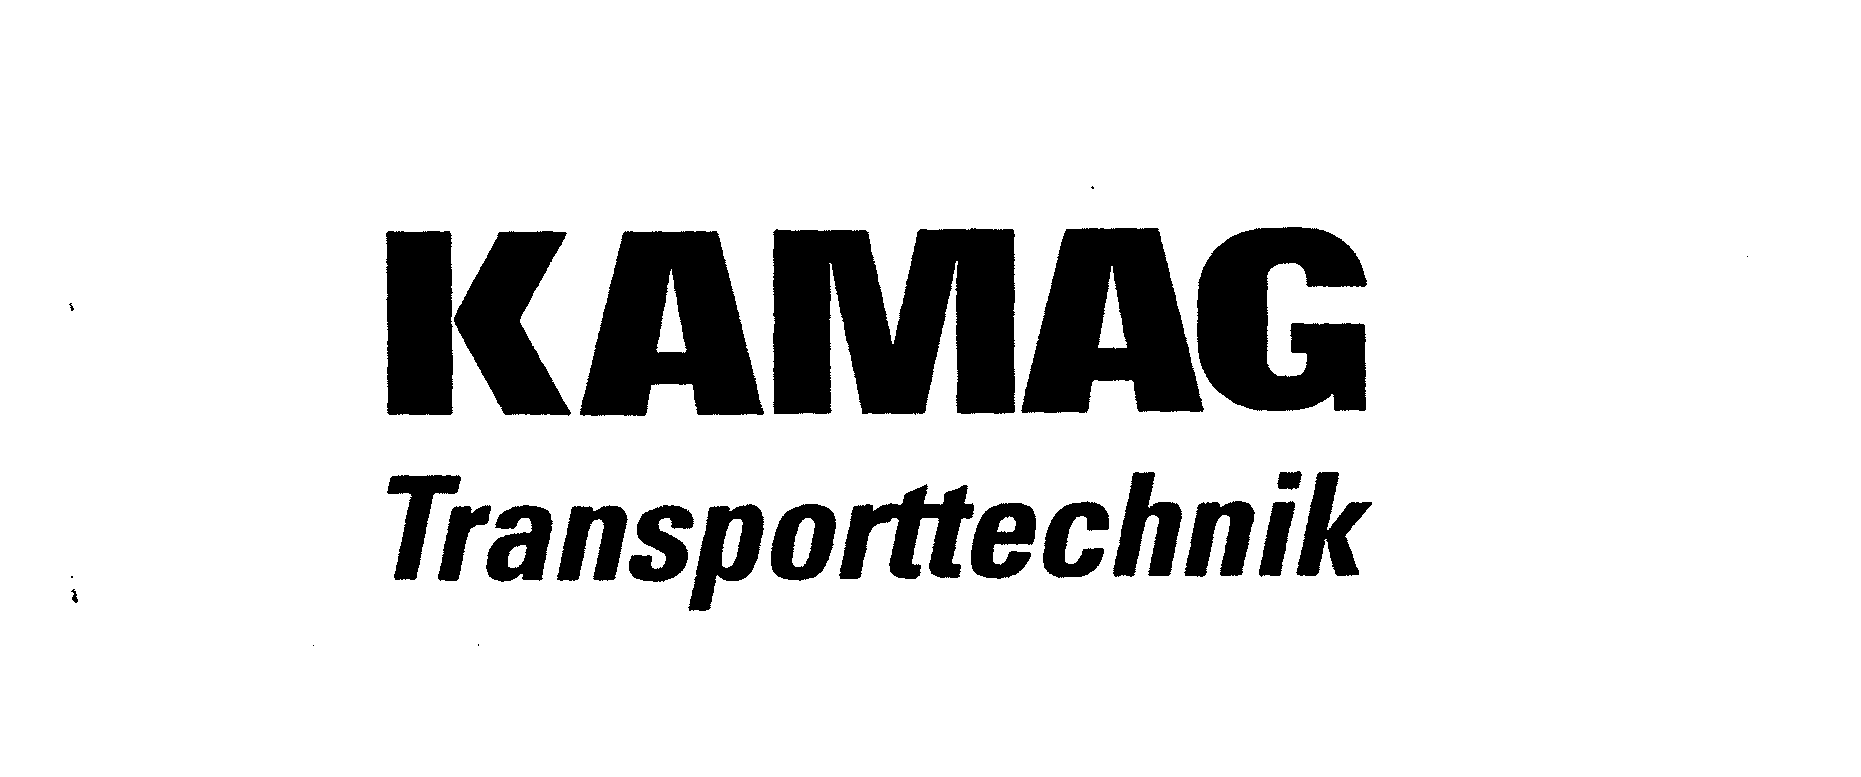  KAMAG TRANSPORTTECHNIK